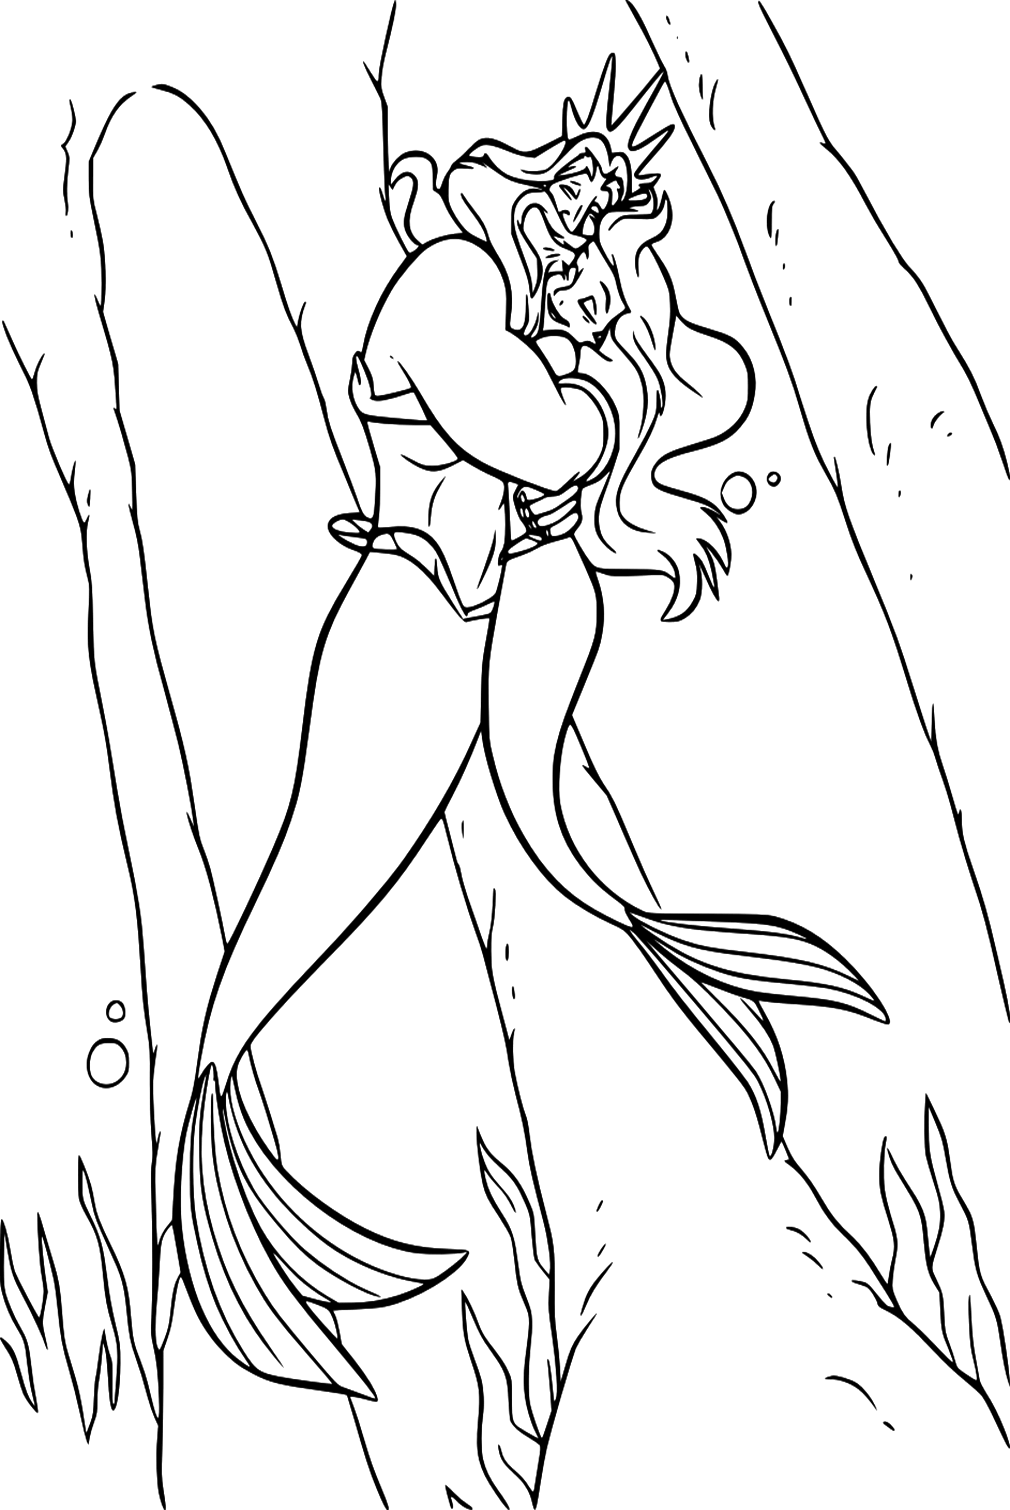 Página para colorear del Rey Tritón con Ariel de La Sirenita